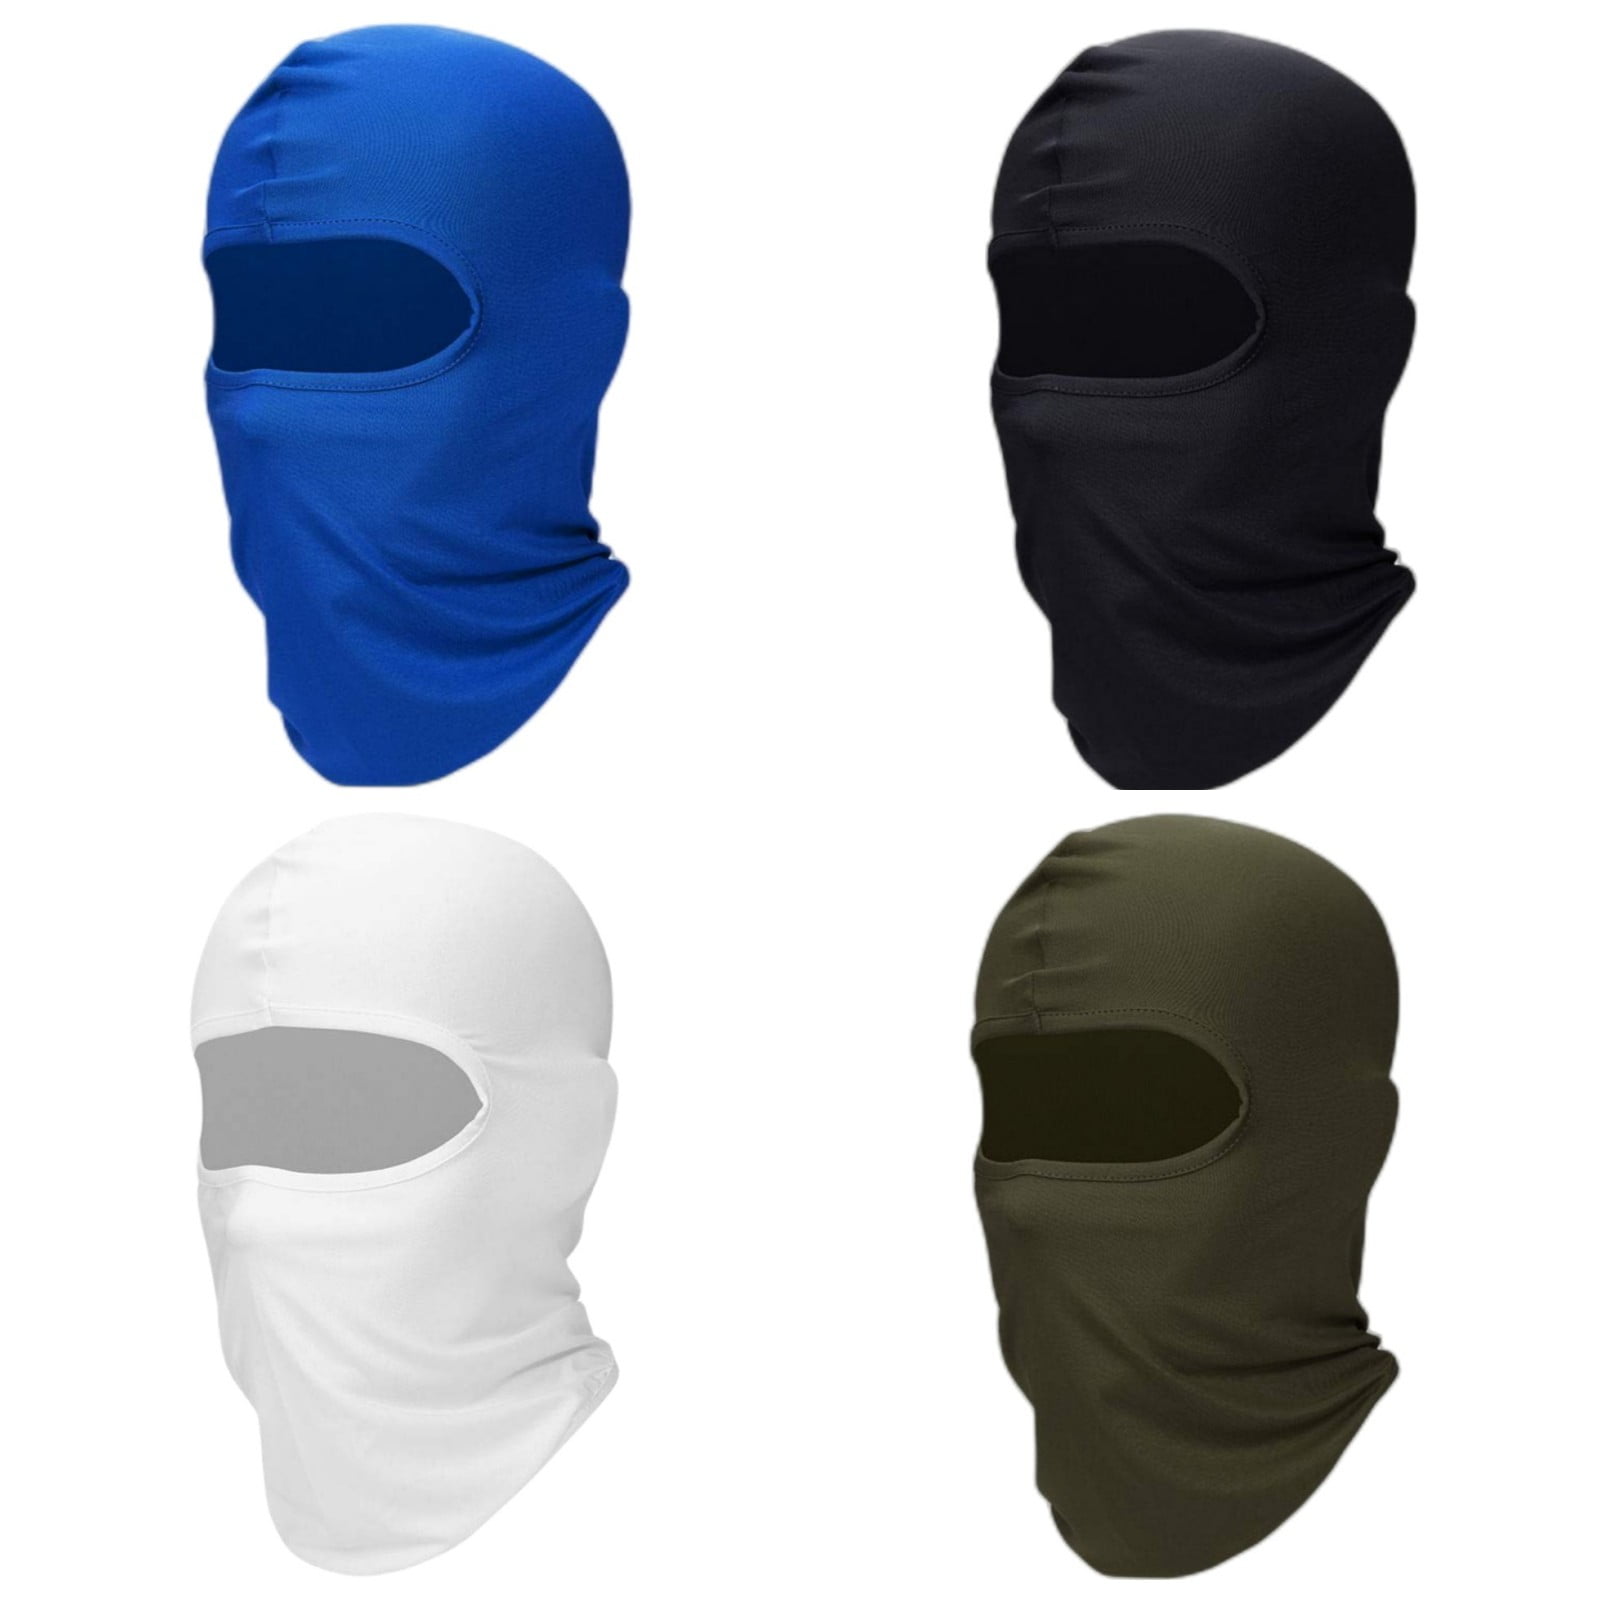 20 Best Balaclavas & Ski Masks To Shop